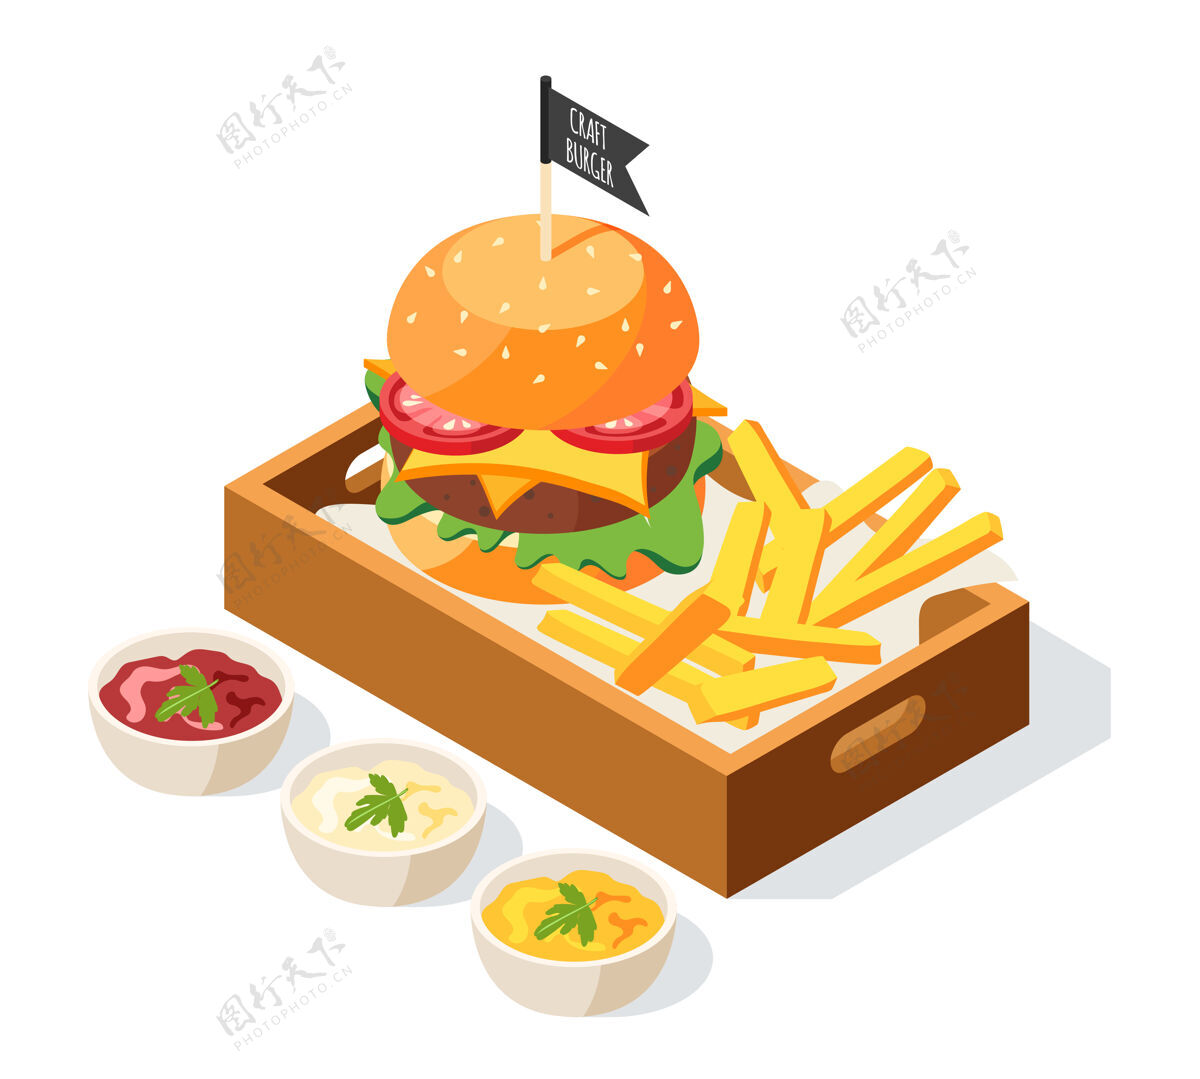 等距汉堡包屋等距图与酱菜组成 并提供汉堡与薯条在盘面上成分服务汉堡